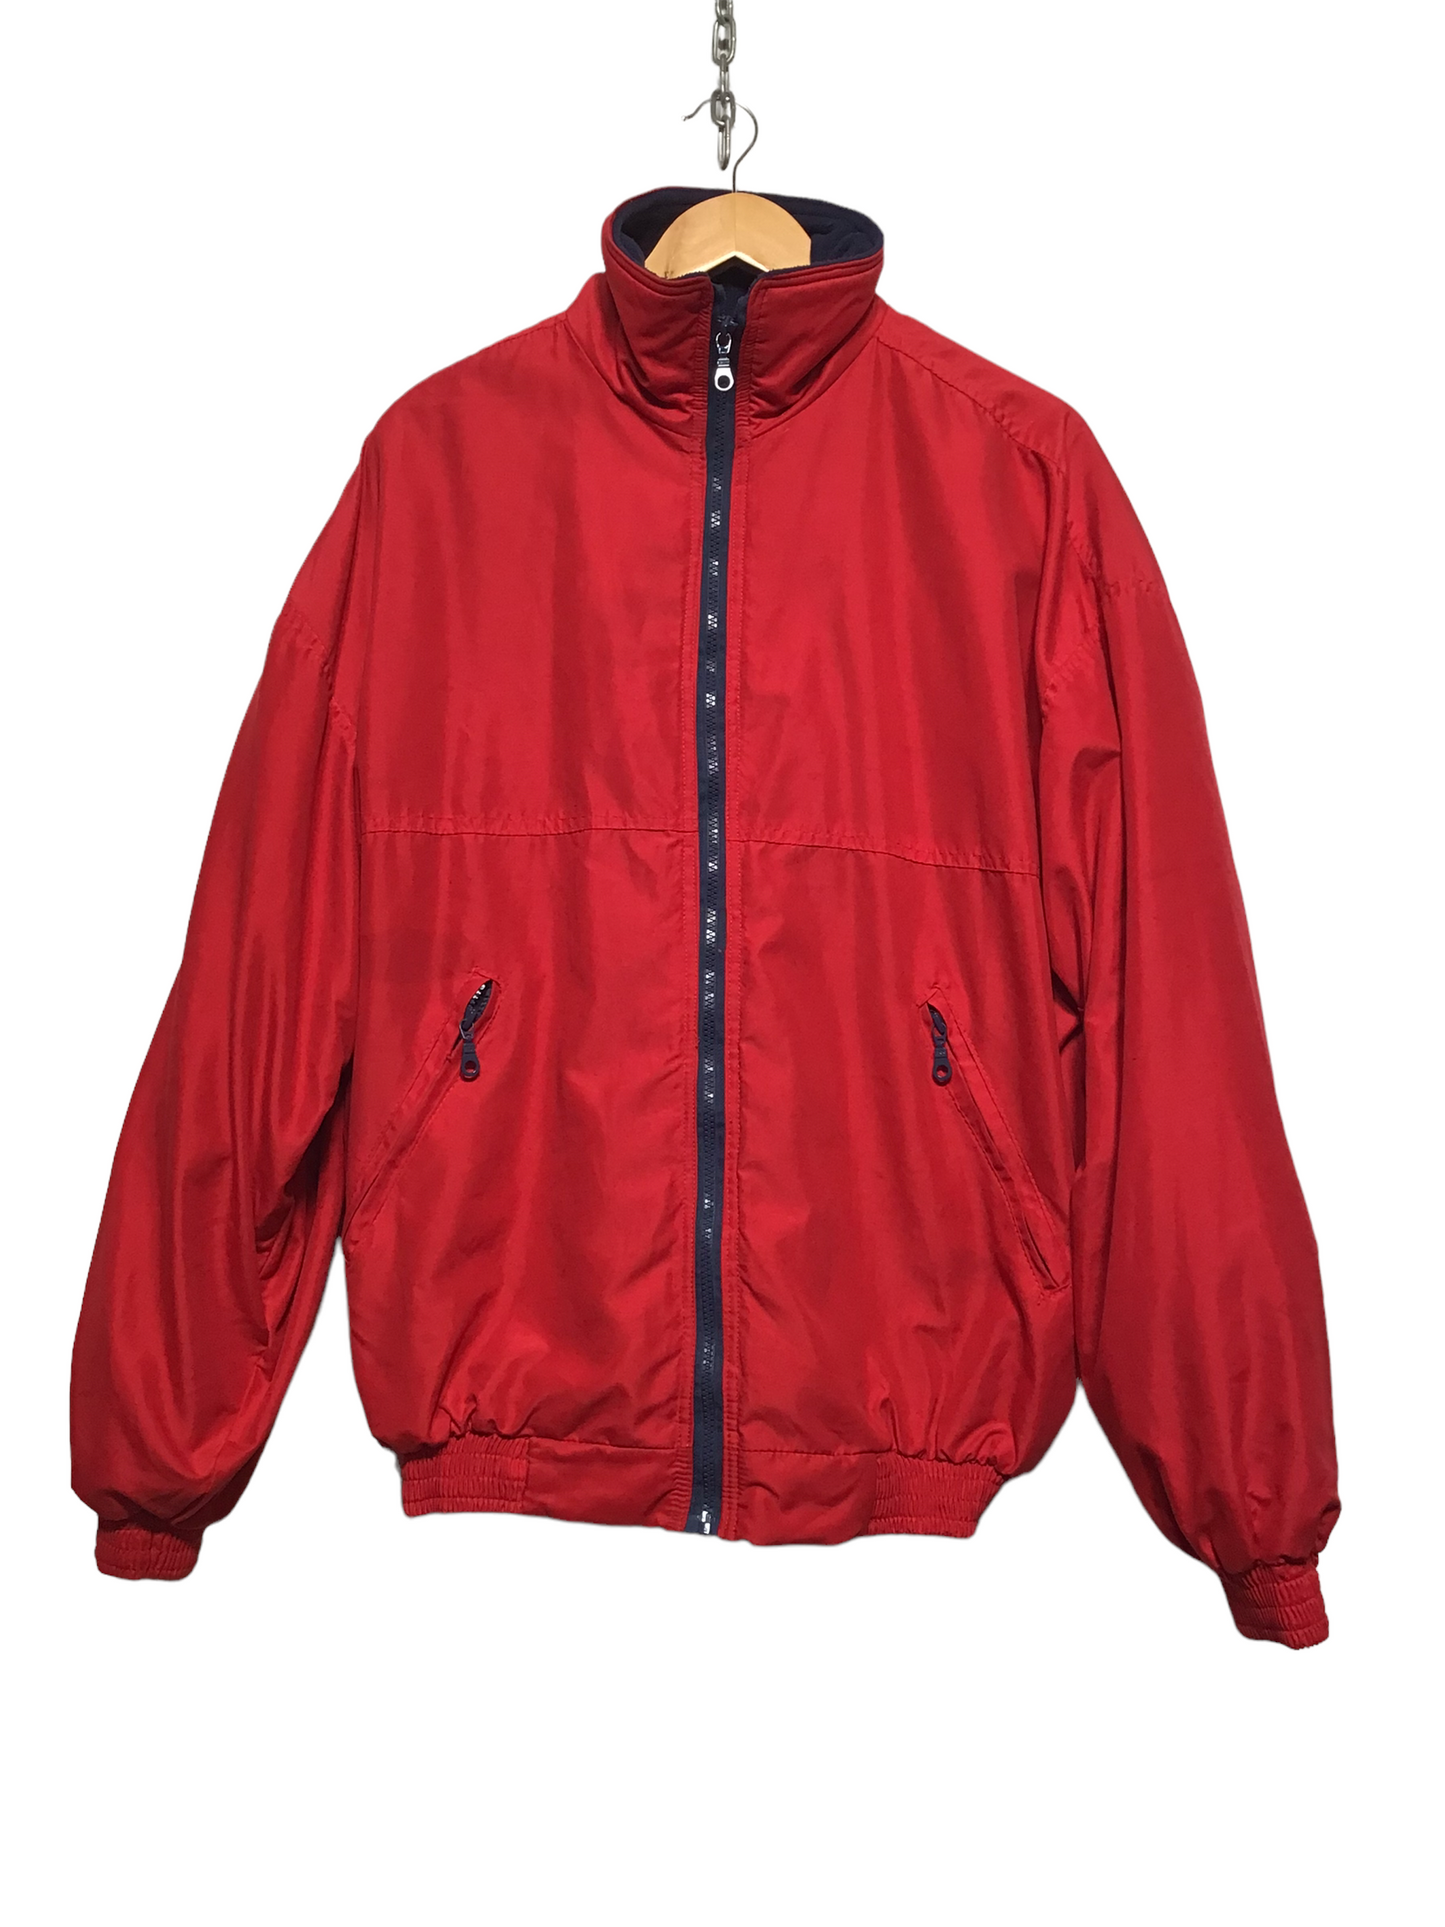 Red Windbreaker Jacket (Size L)